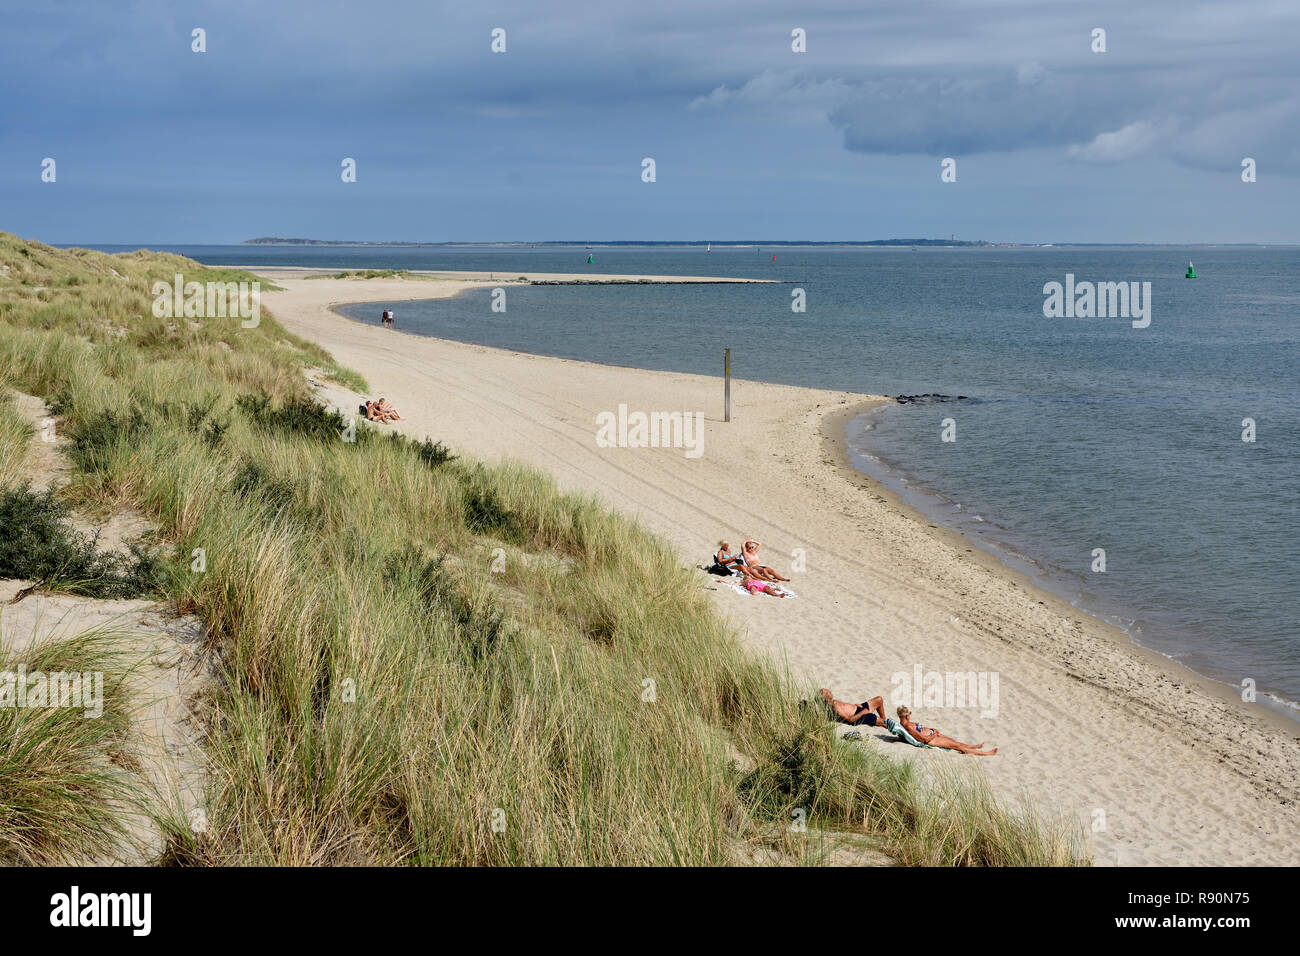 La mer des wadden Vlieland Island Frise aux Pays-Bas Banque D'Images